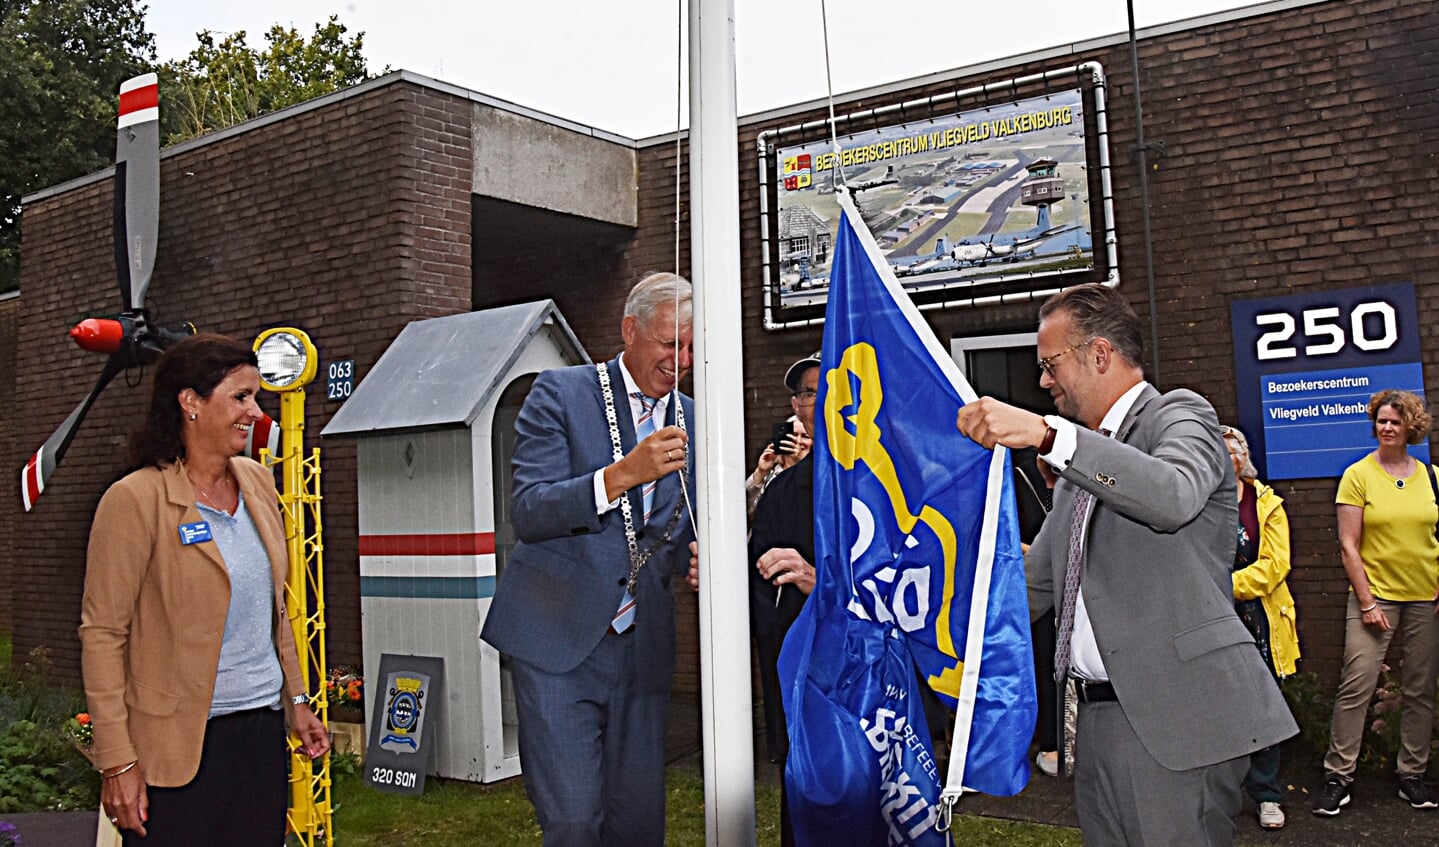 De vlag wordt gehesen door burgemeester Visser en wethouder Knape. Yvonne van den Anker kijkt toe. | PvK